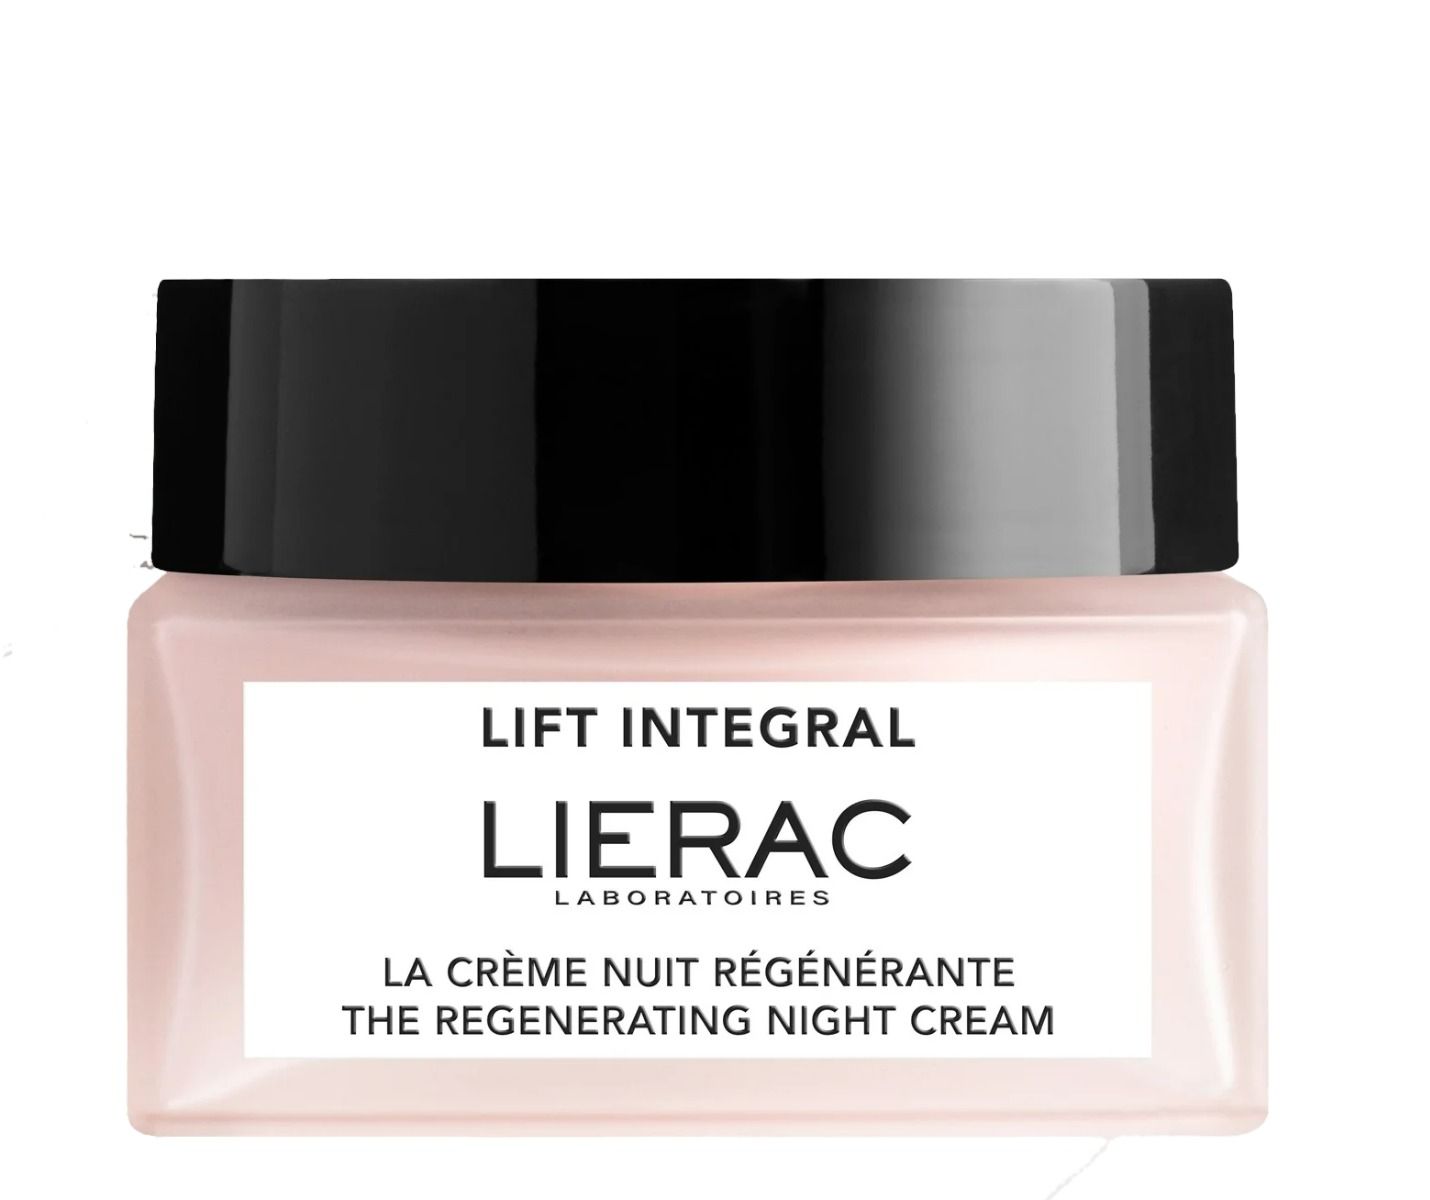 Lierac Lift Integral крем для лица на ночь, 50 ml lierac восстанавливающий ночной крем лифтинг для лица сменный блок 50 мл lierac lift integral